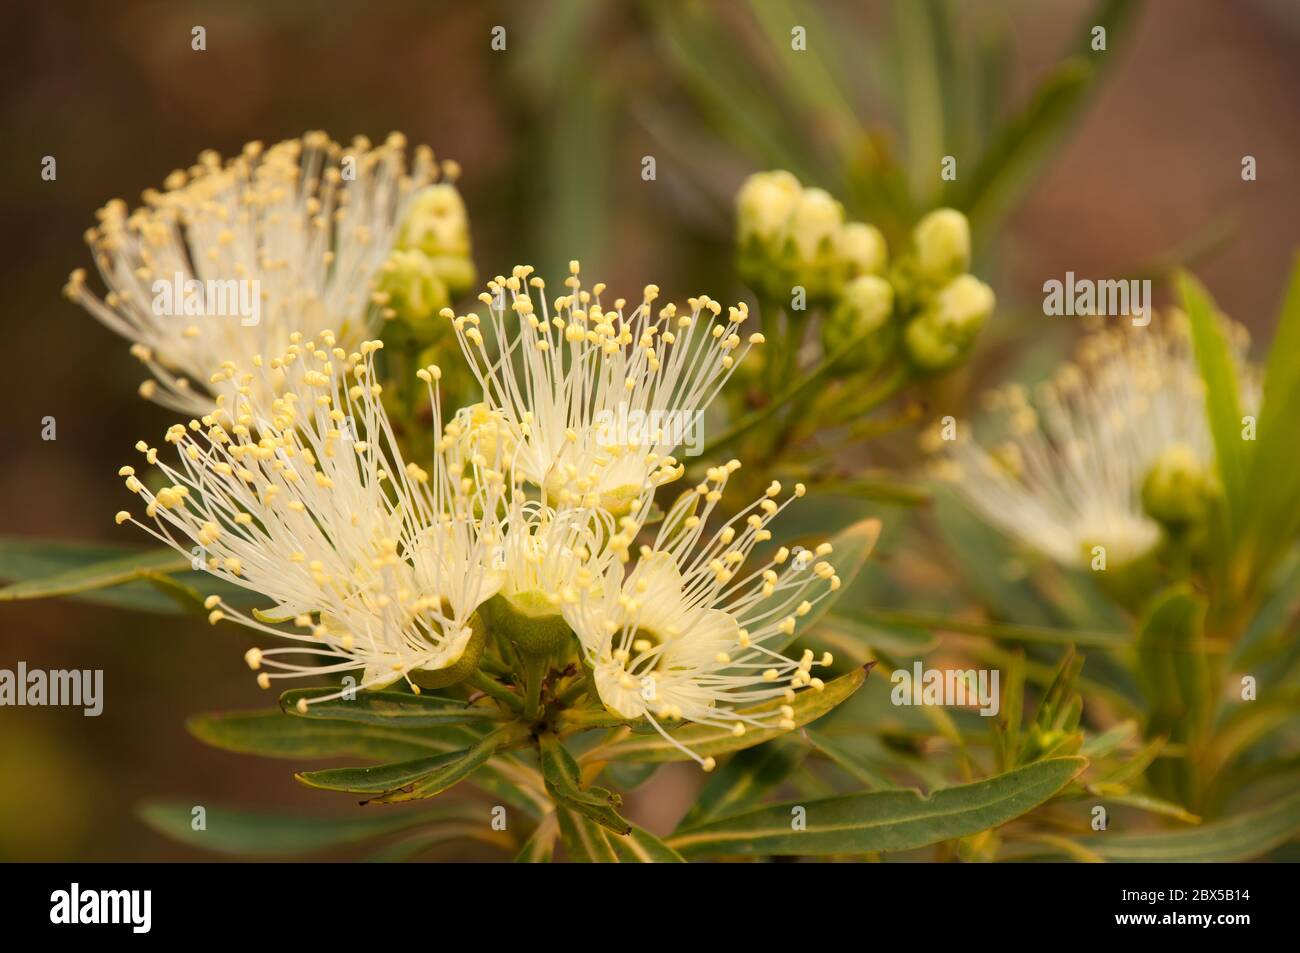 Sydney Australia, flowers of a Xanthostemon Verticillatus or Little Penda an australian native Stock Photo